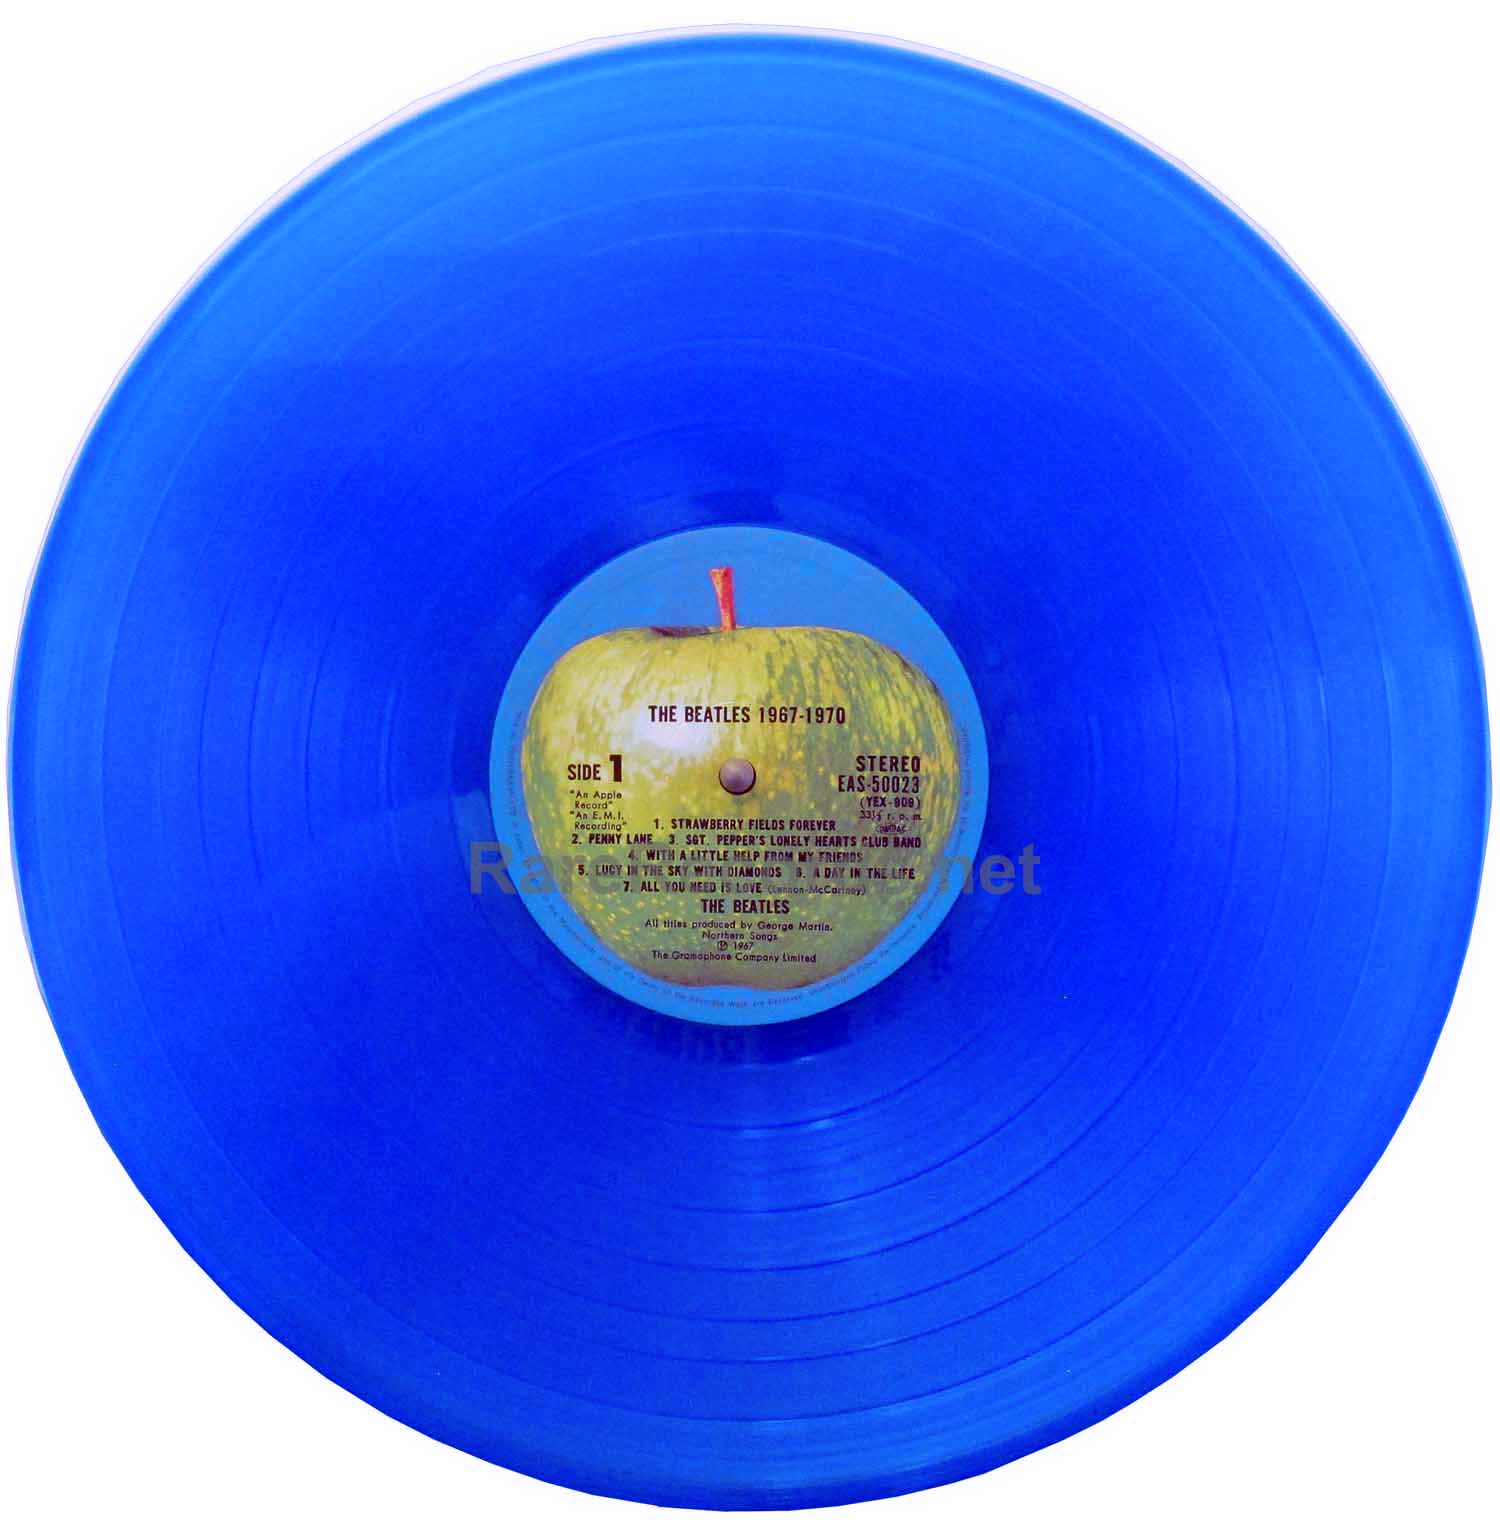 Beatles – 1962-1966/1967-1970 1978 Japan red/blue vinyl 4 LP set